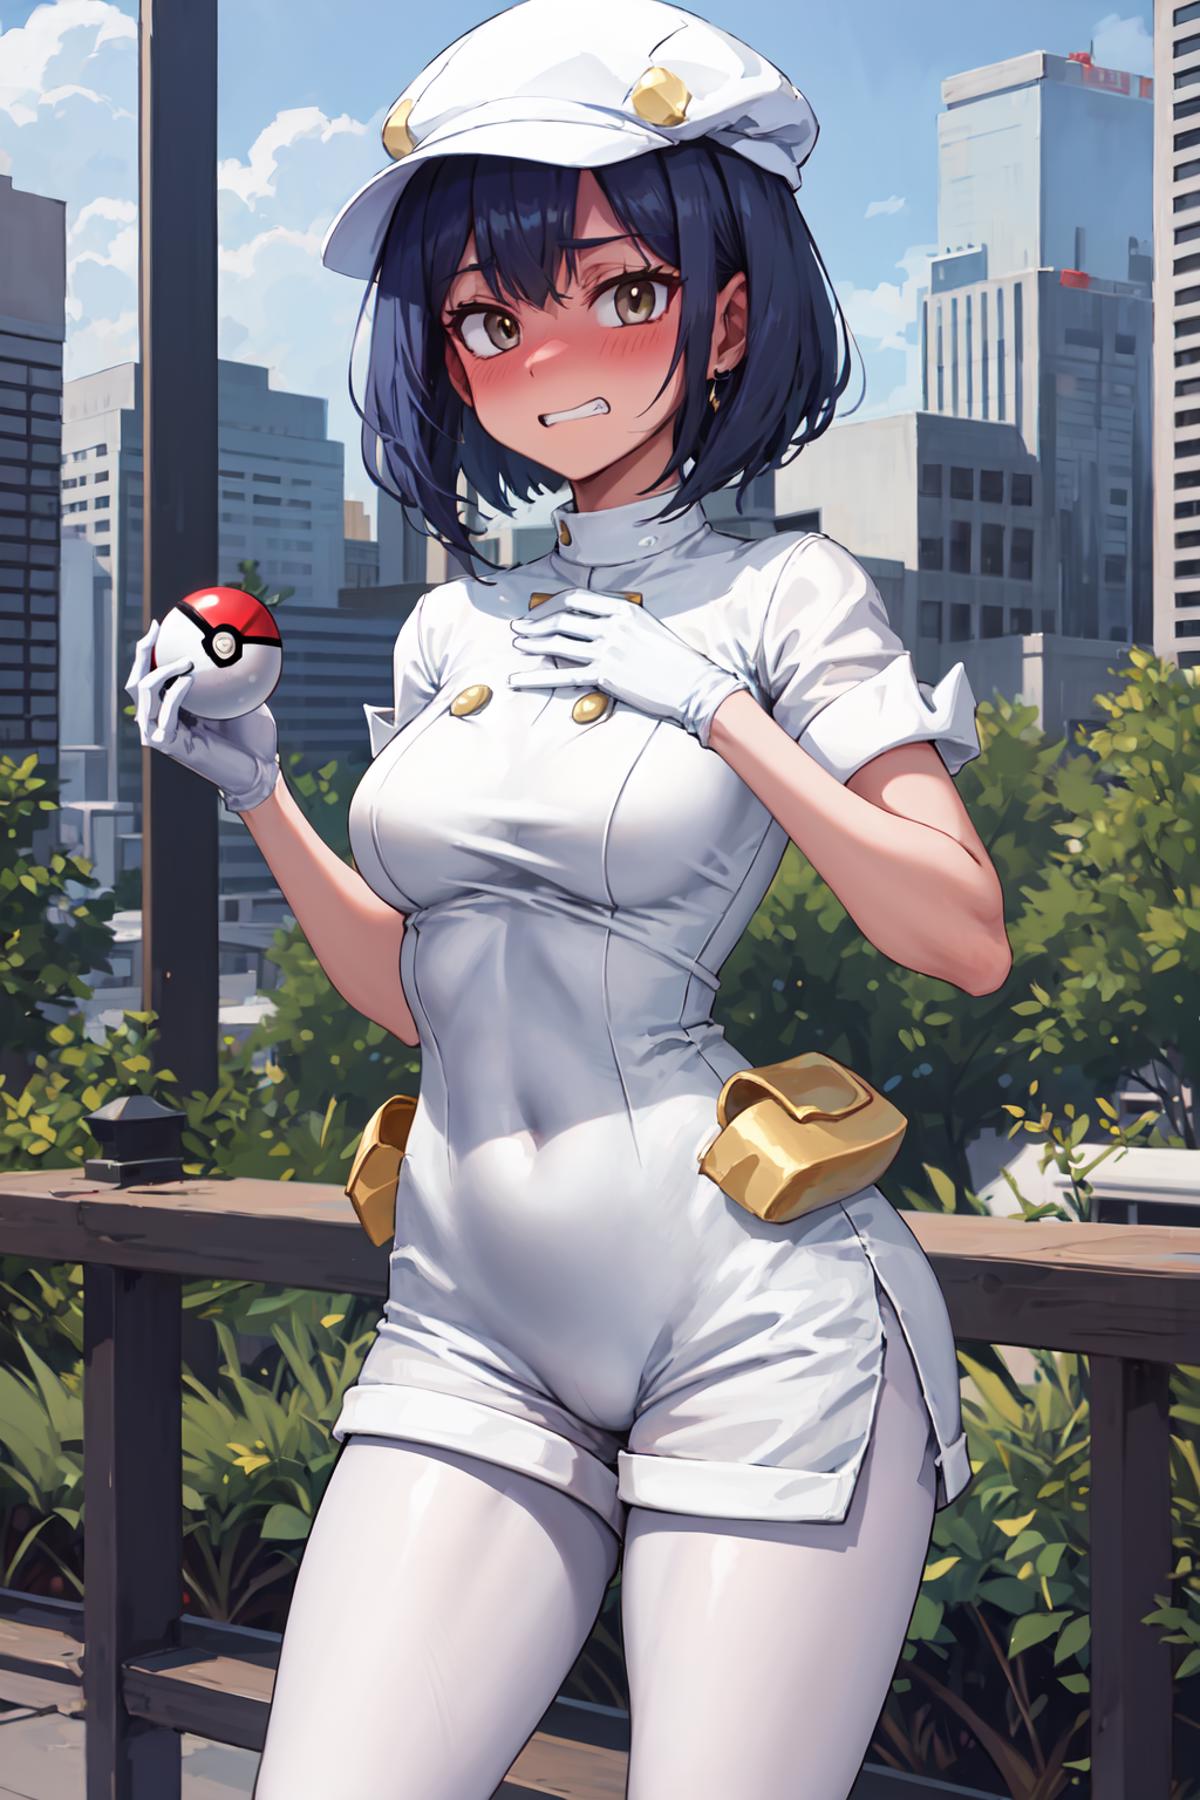 Pokemon - Aether Foundation Employee image by Akamushi